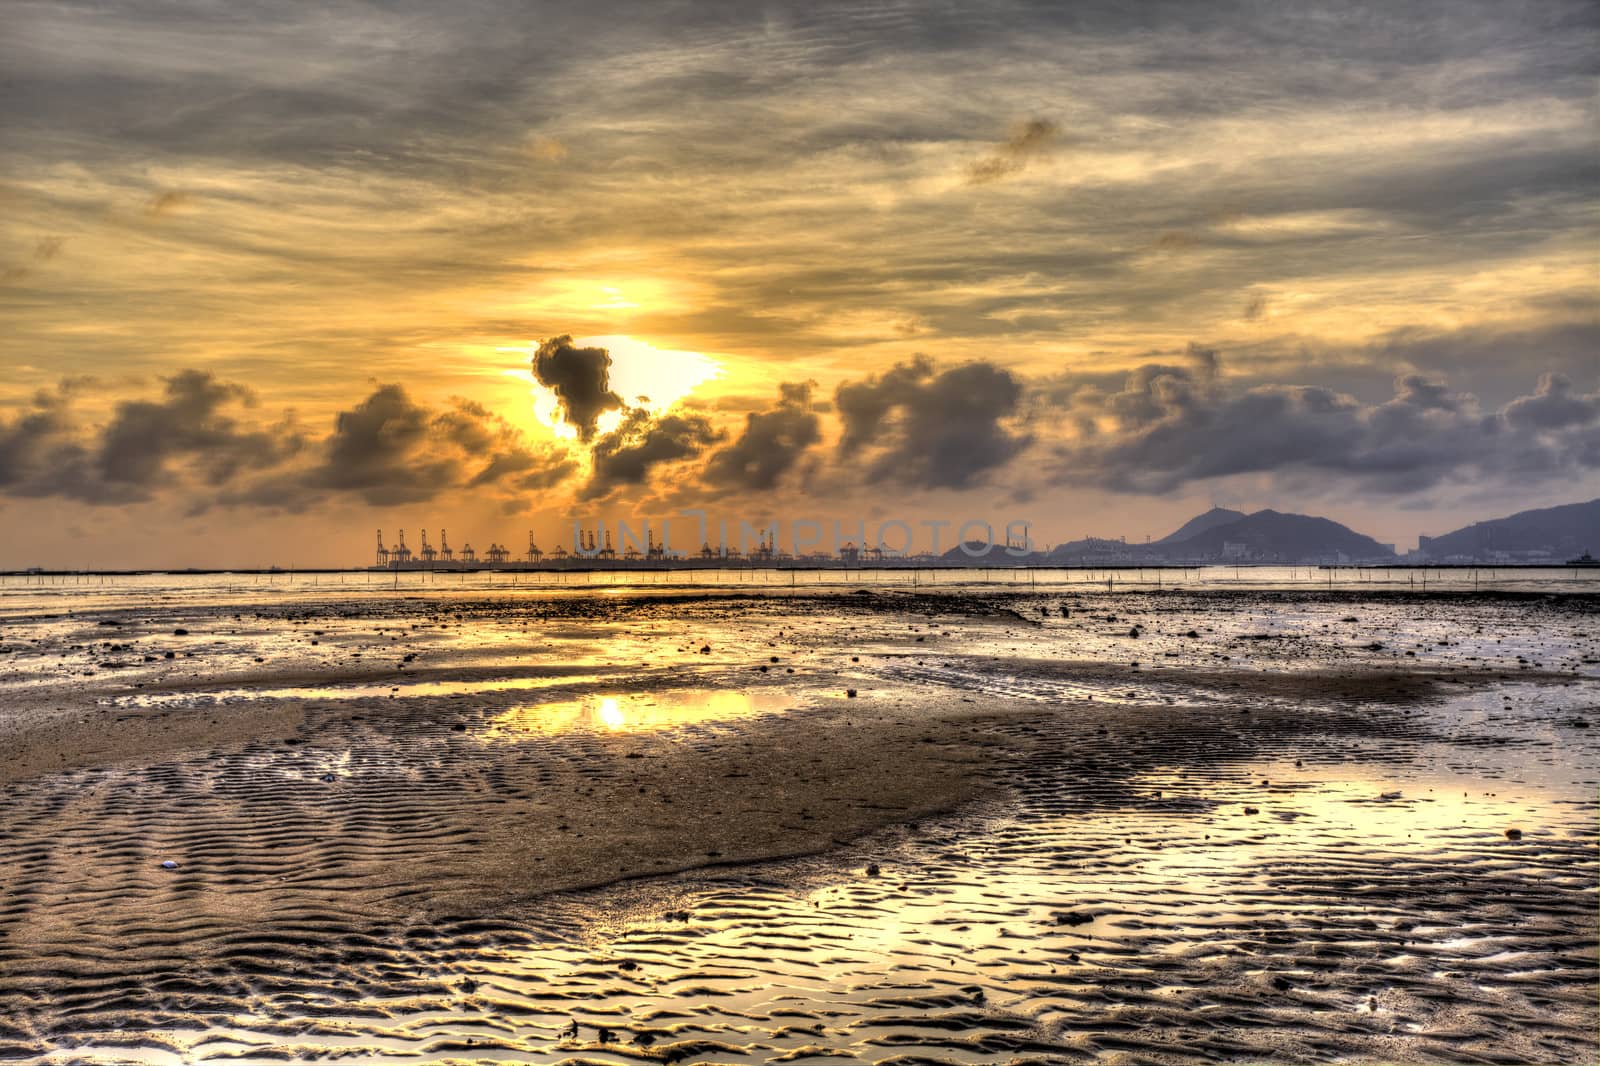 Sunset coast in Hong Kong  by kawing921